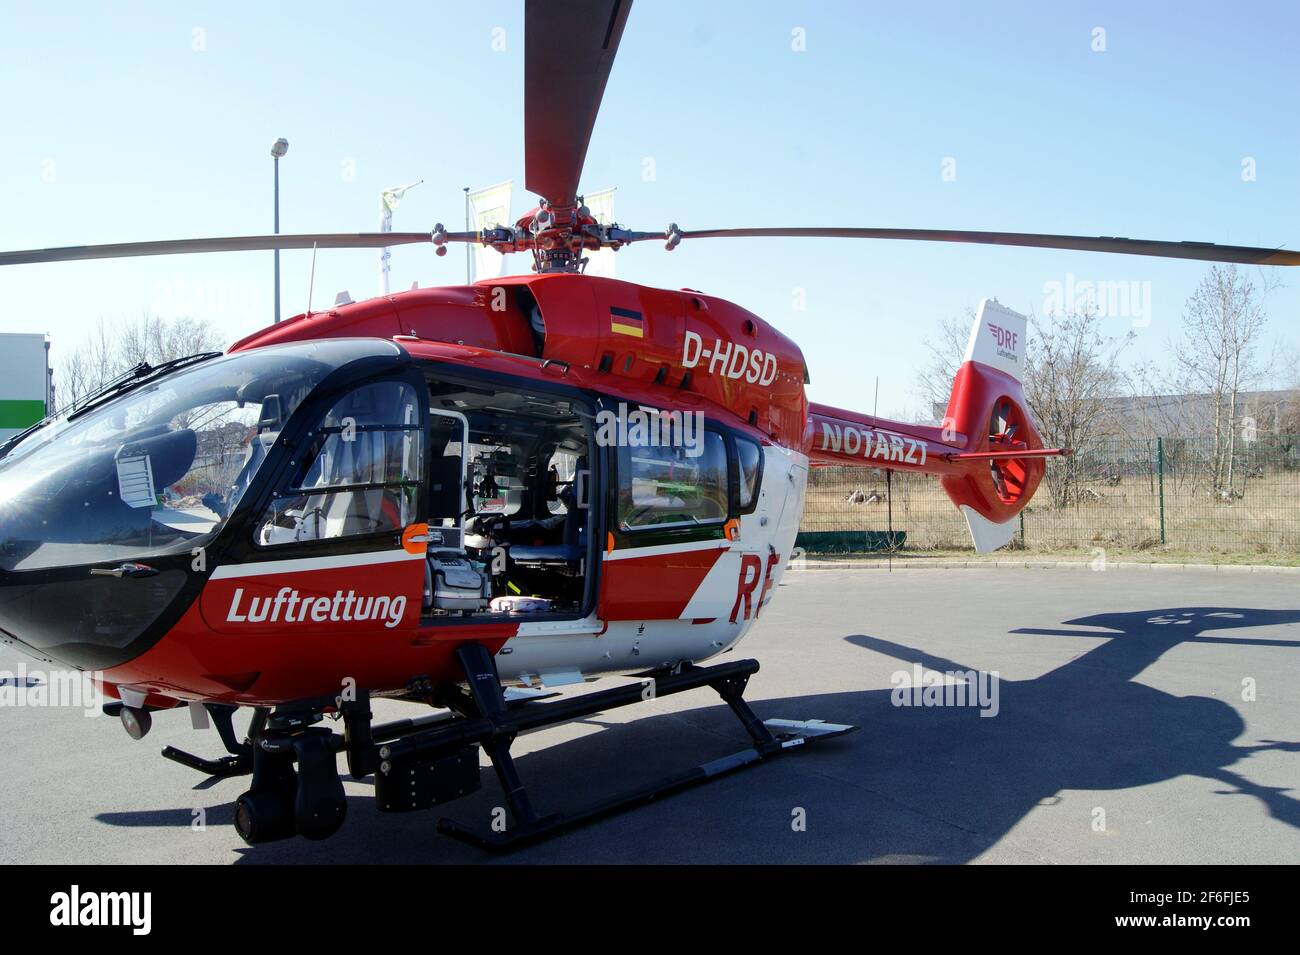 Der Hubbrauber Christoph Berlin D-HDSD, Airbus Helicopters H145, der Deutsche Rettungsflugwacht DRF am 31 März 2021 in Berlin-Spandau Foto Stock